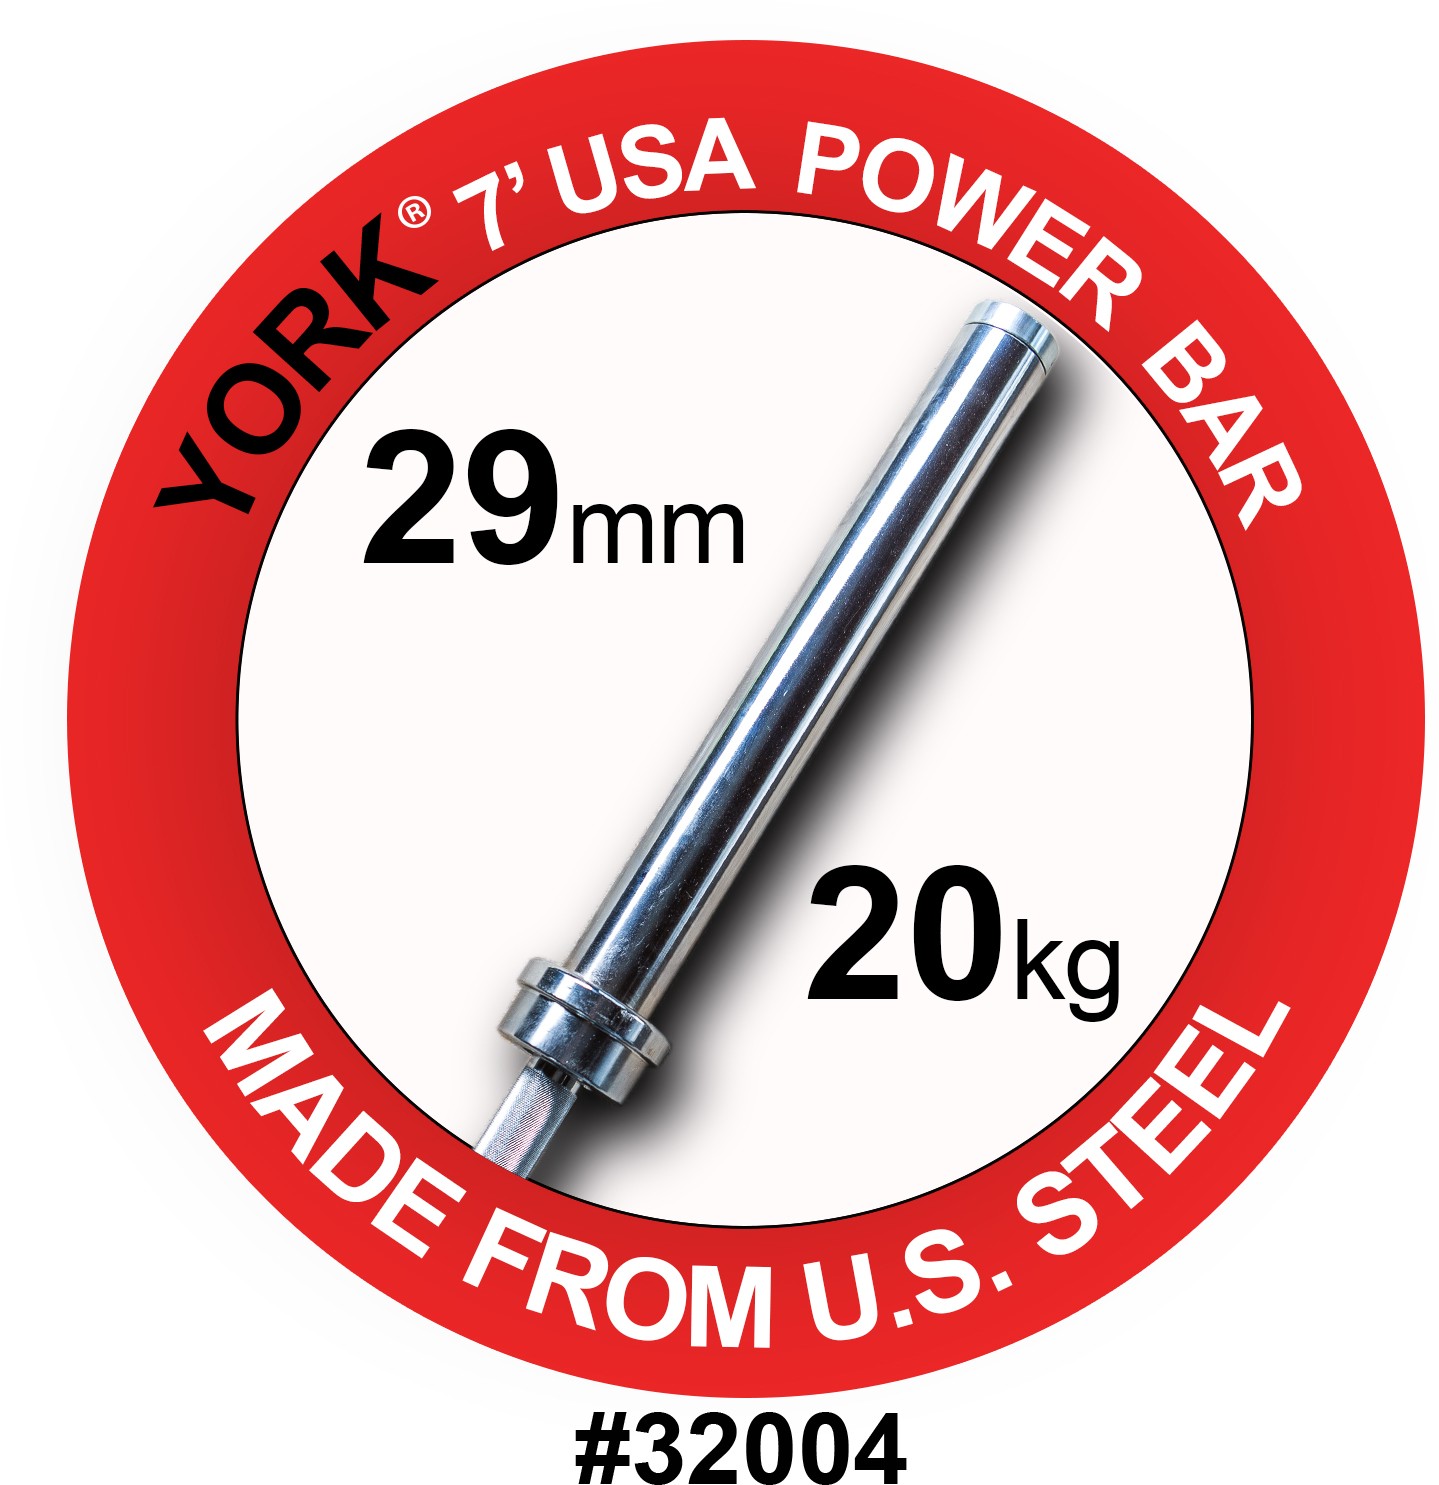 York 7′ USA Power Weight Bar (New)